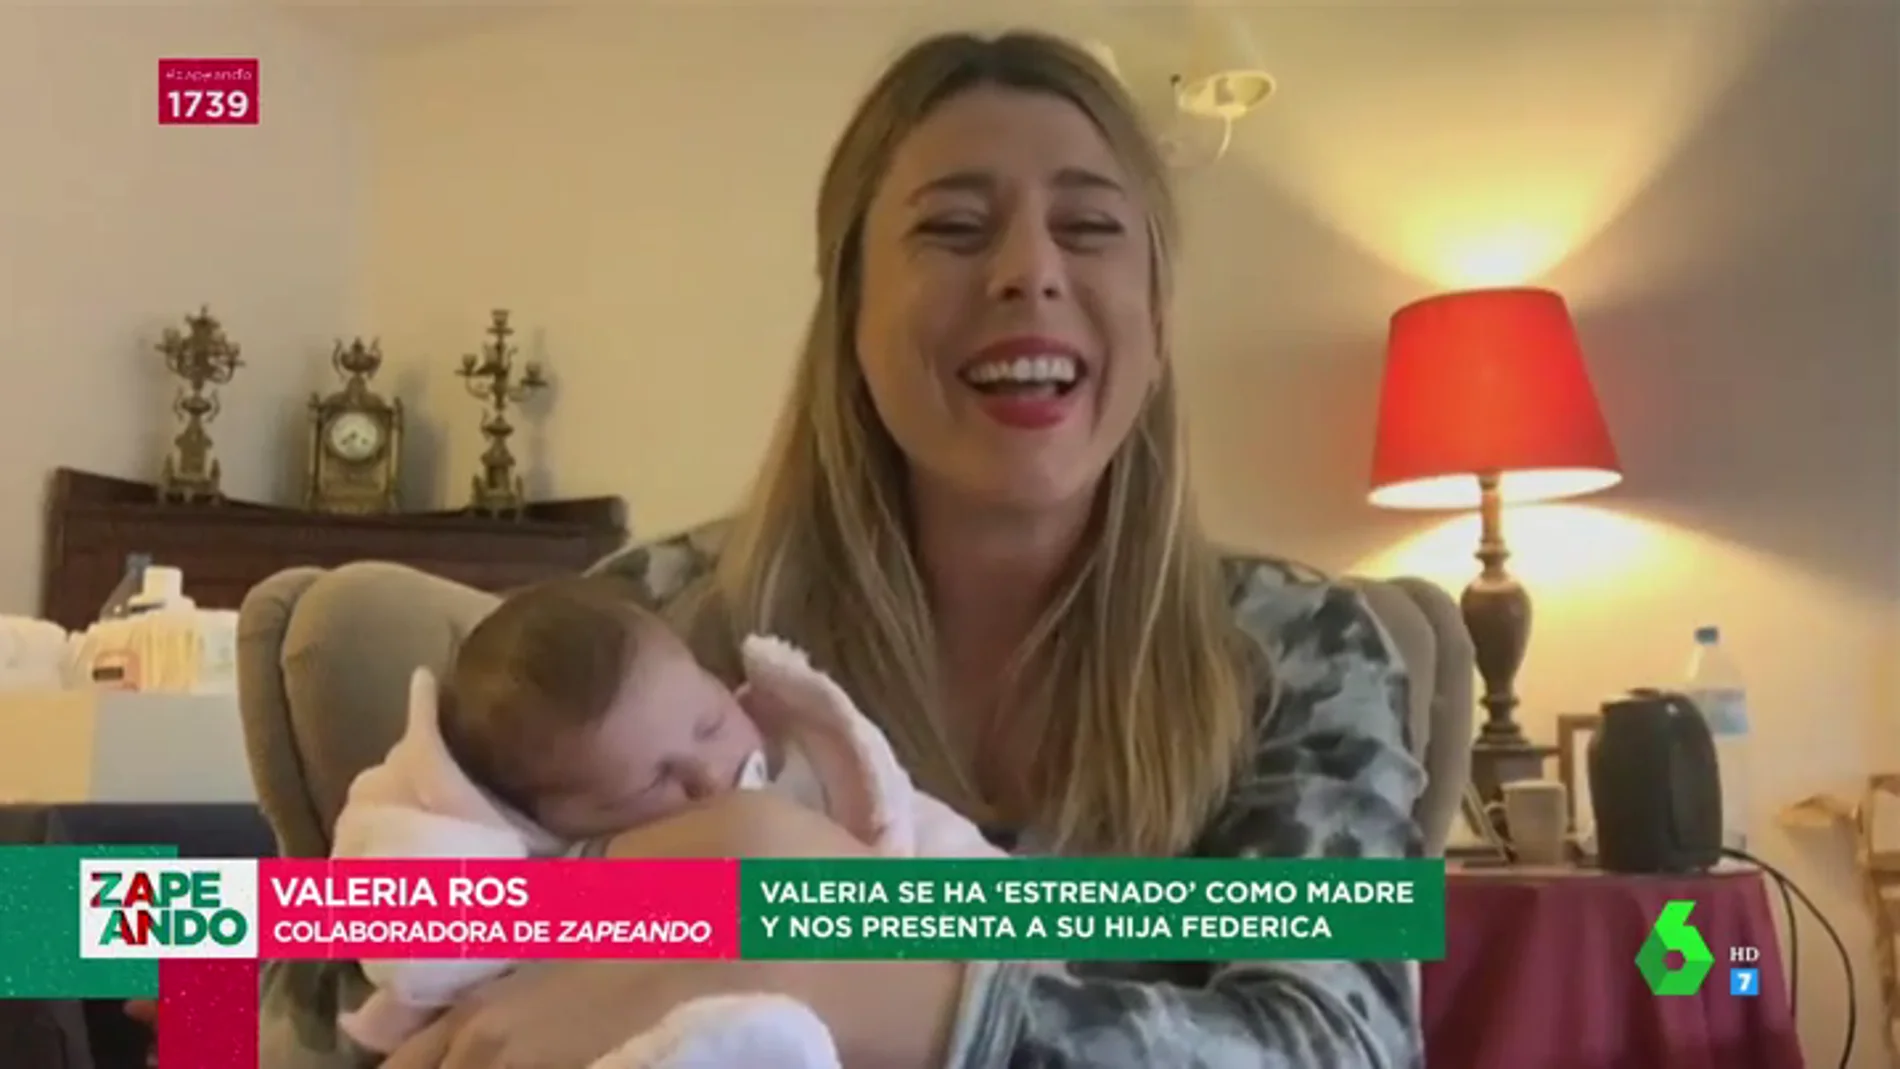 Valeria Ros presenta a su hija Federica en Zapeando: "Es la niña más guapa del mundo"